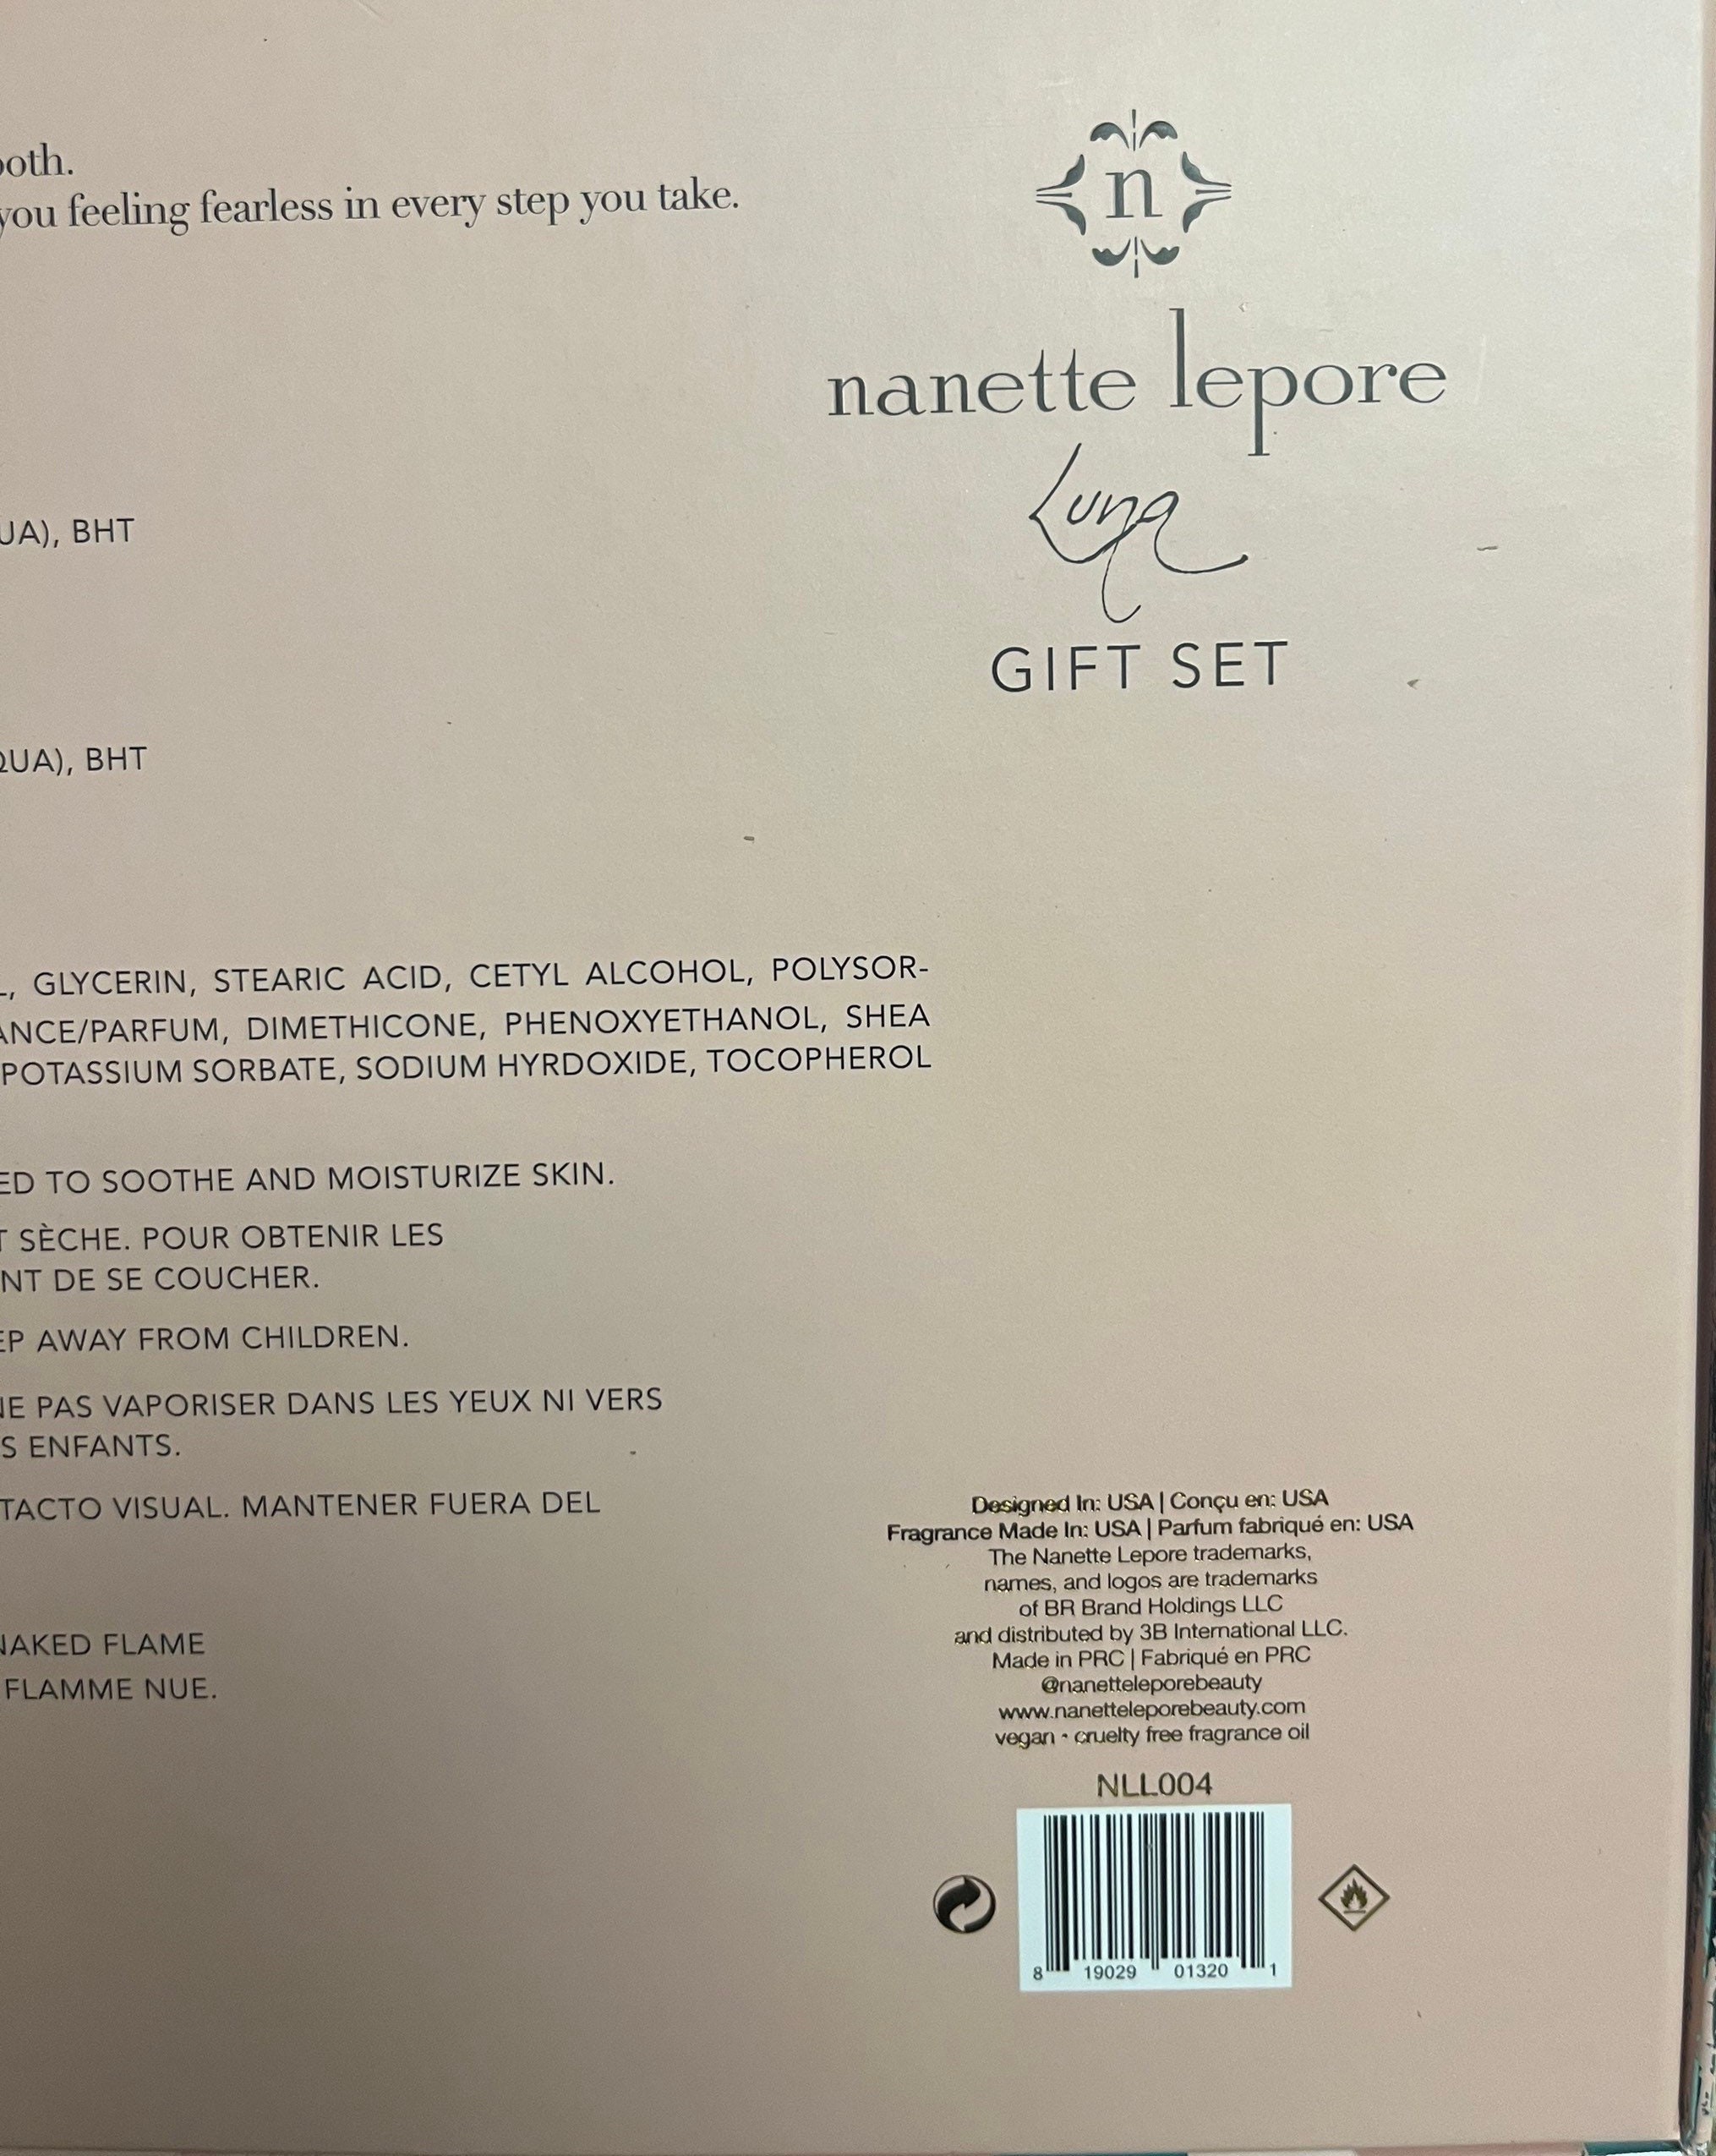 Buy NANETTE LEPORE Luna at Scentbird for $16.95